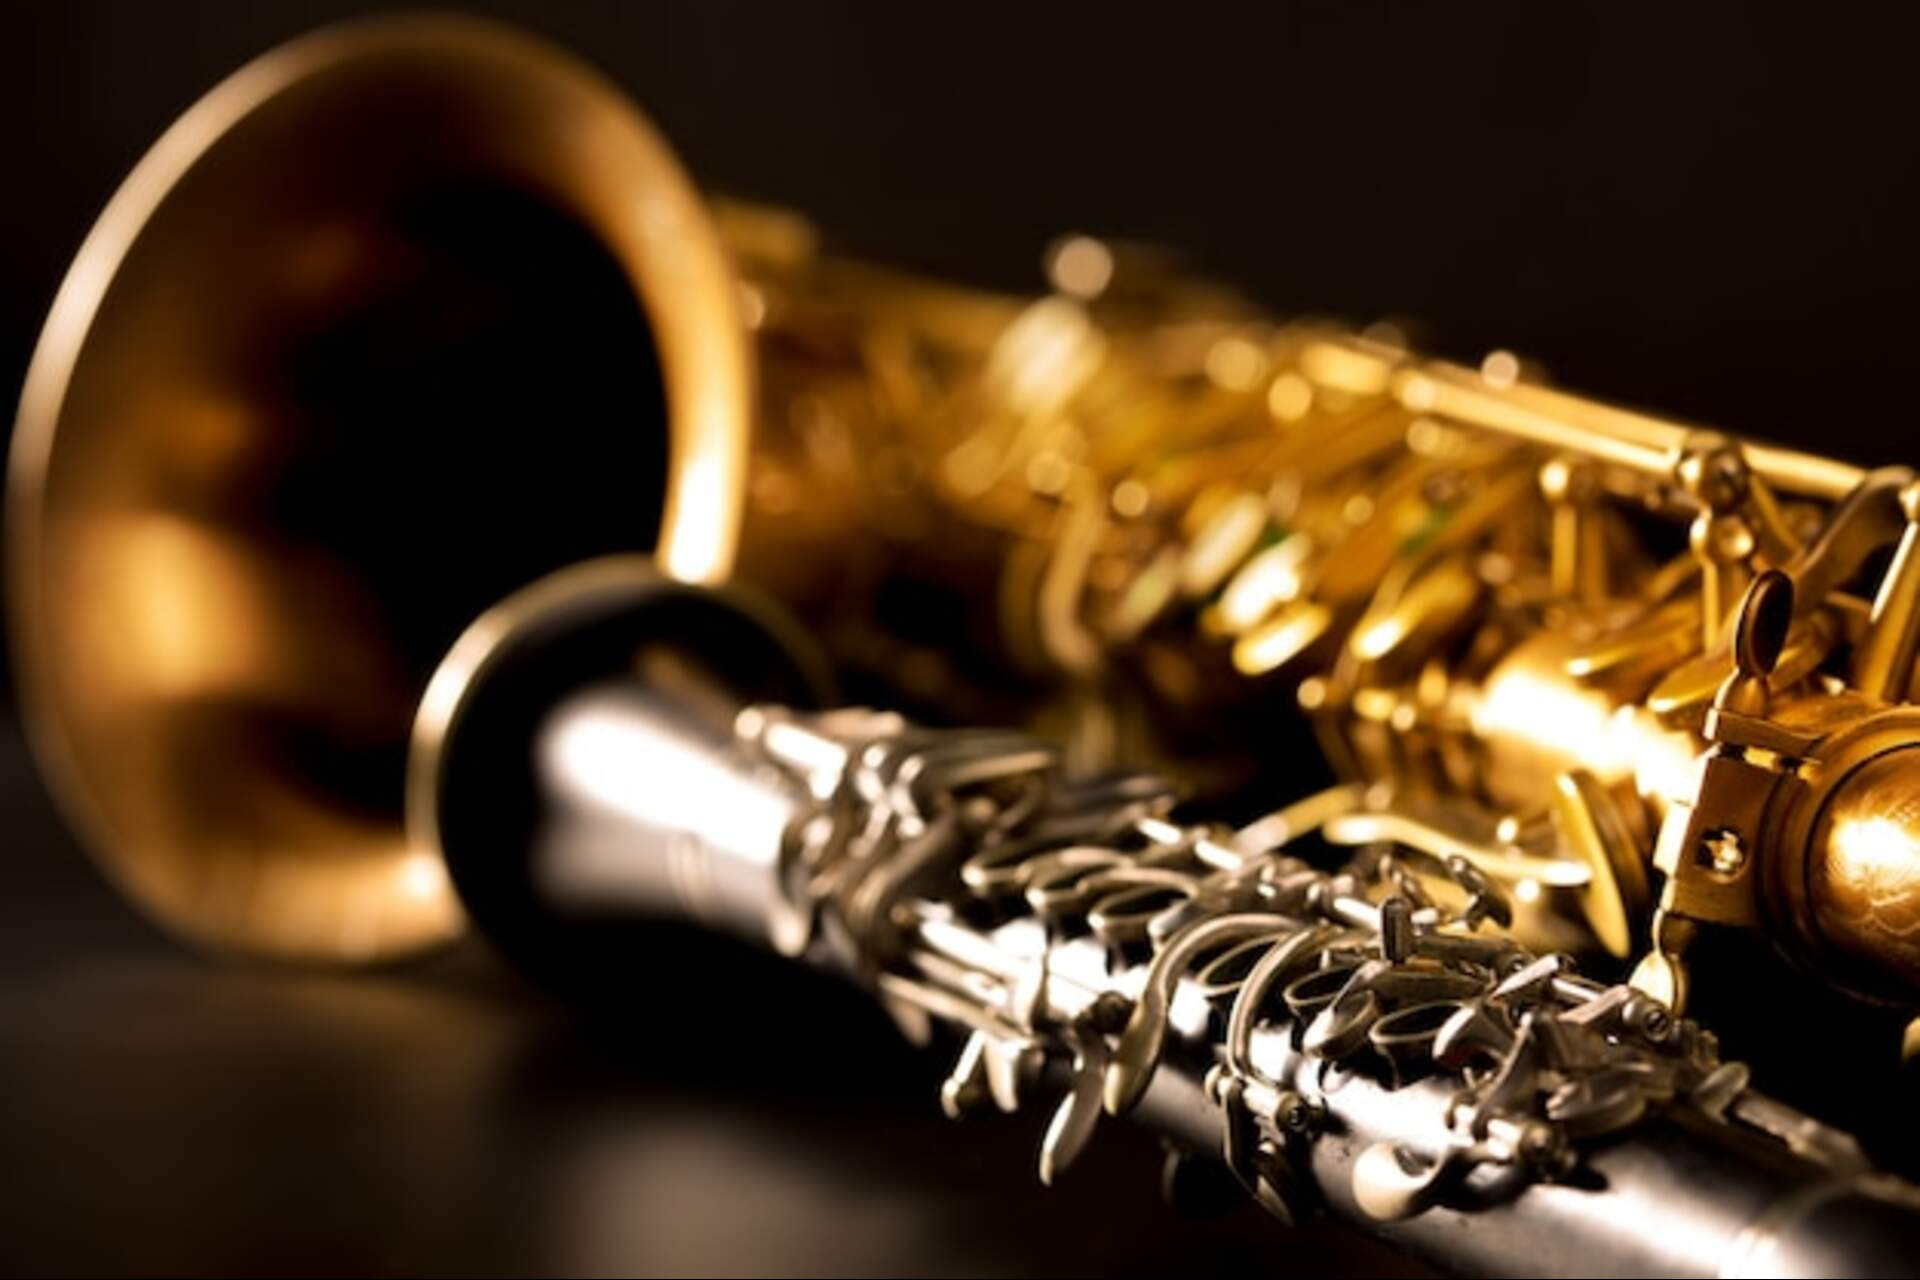 musique-classique-saxophone-tenor-clarinette-noir_79295-705-576637818.jpg